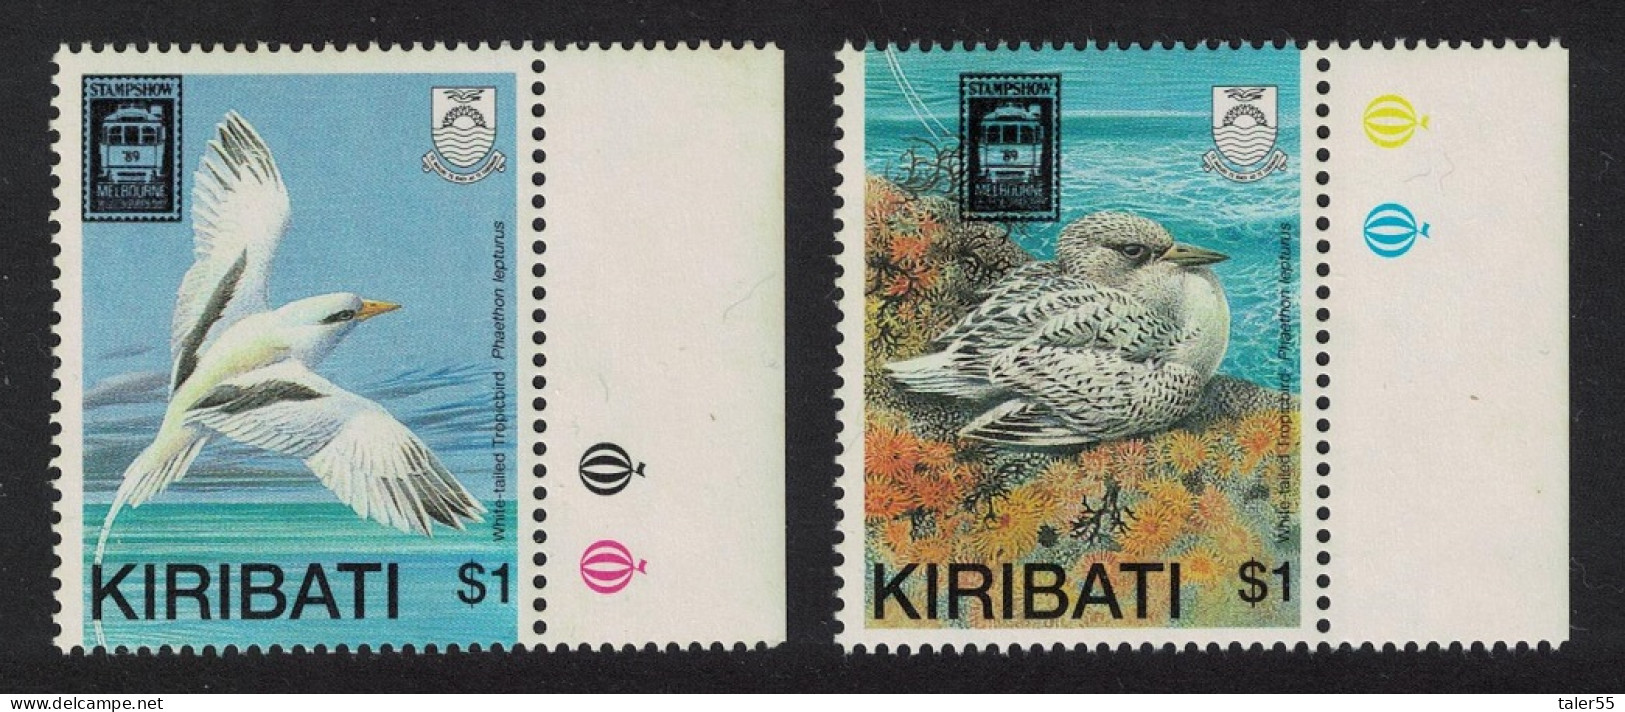 Kiribati Tropicbird Birds 2v 1989 MNH SG#316-317 - Kiribati (1979-...)